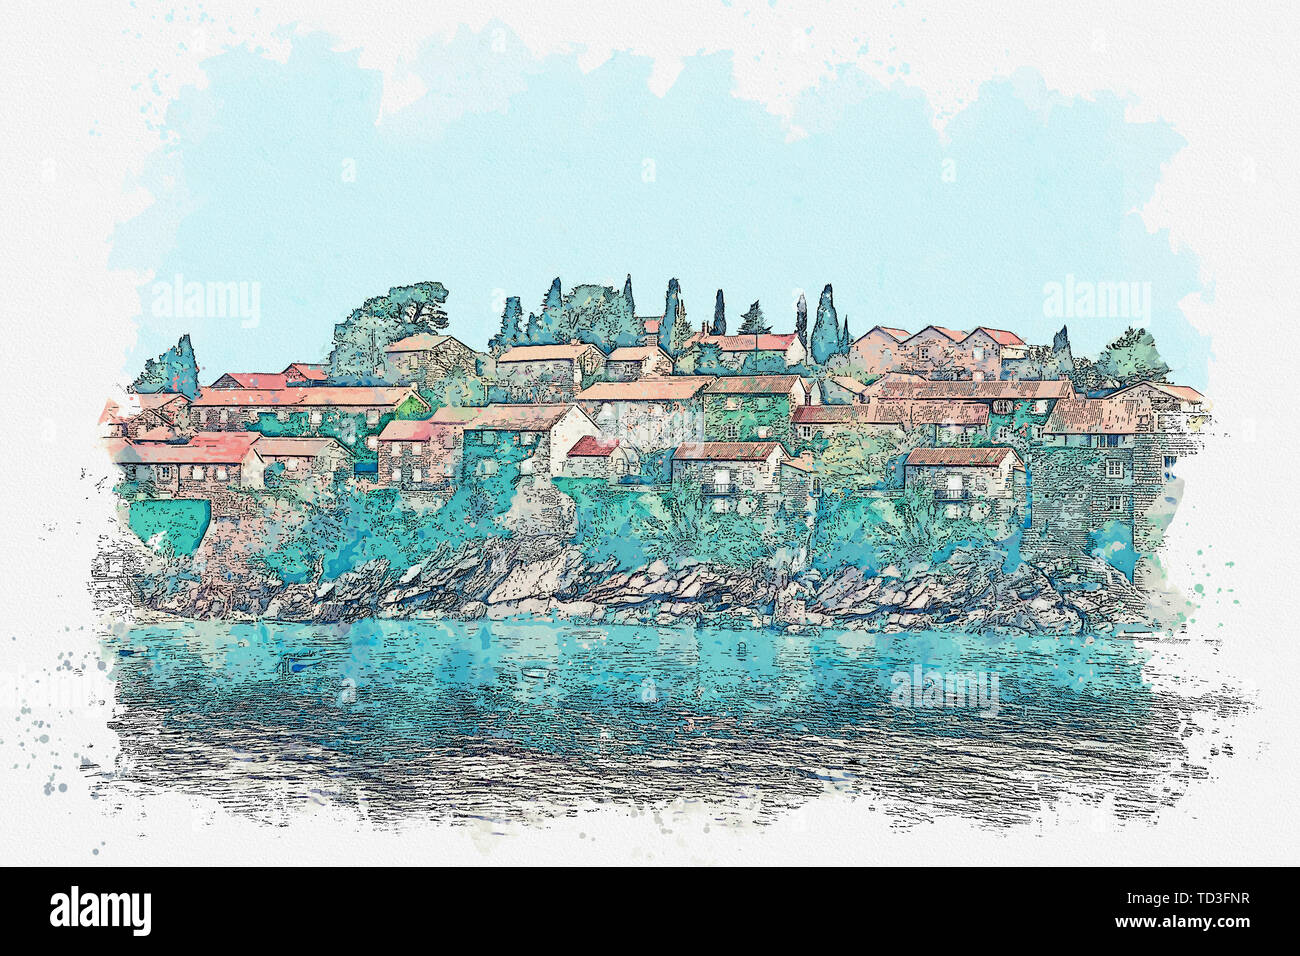 Aquarell Skizze oder Abbildung: Blick auf Architektur oder Gebäude auf der Insel Sveti Stefan in Montenegro. Stockfoto